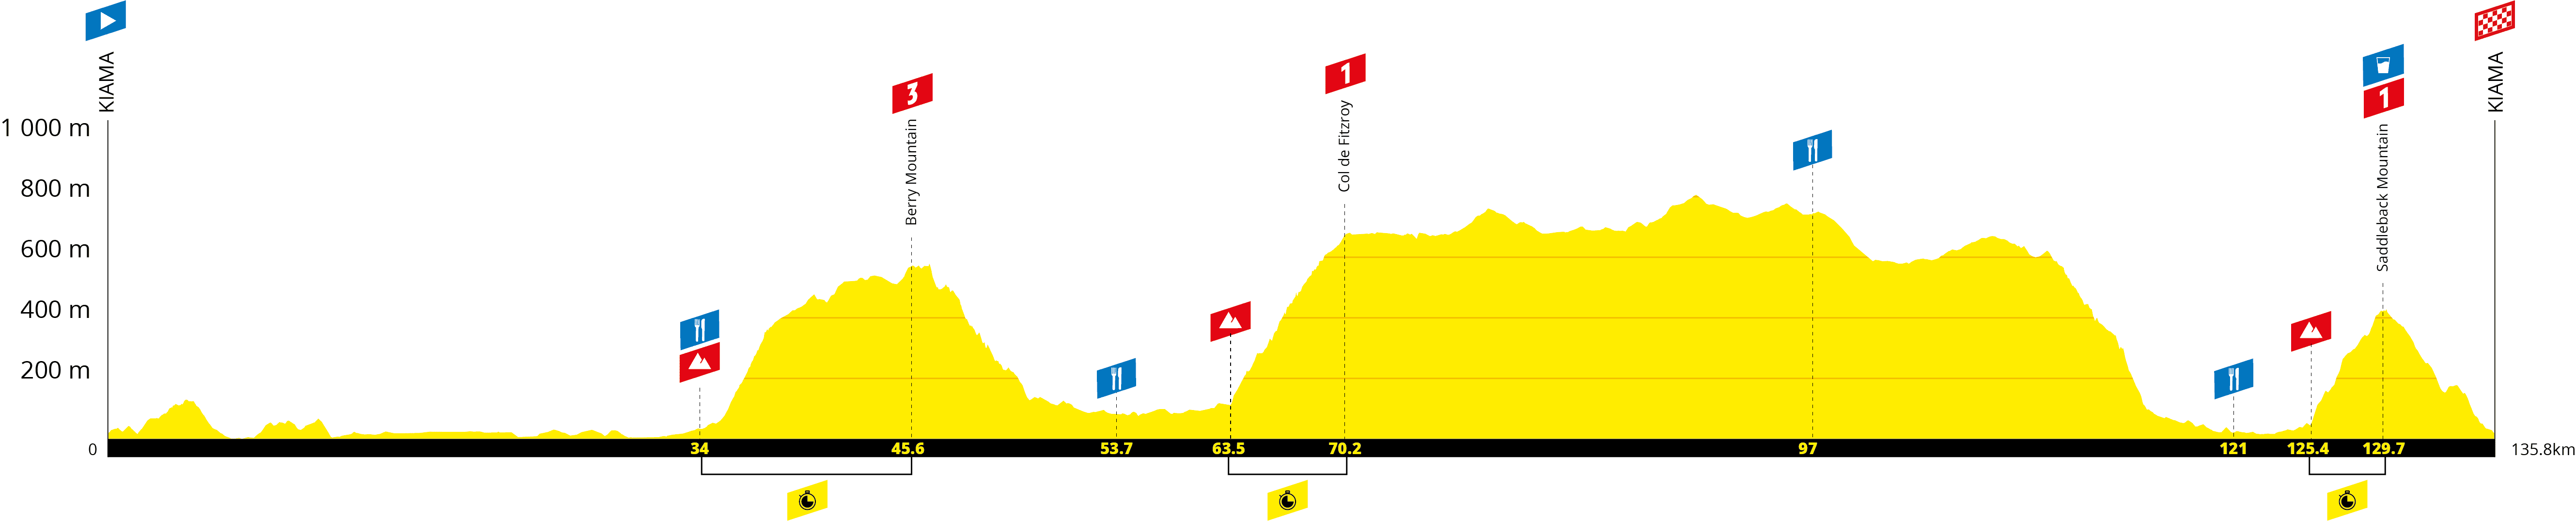 L’Étape Australia by Tour de France route reveal